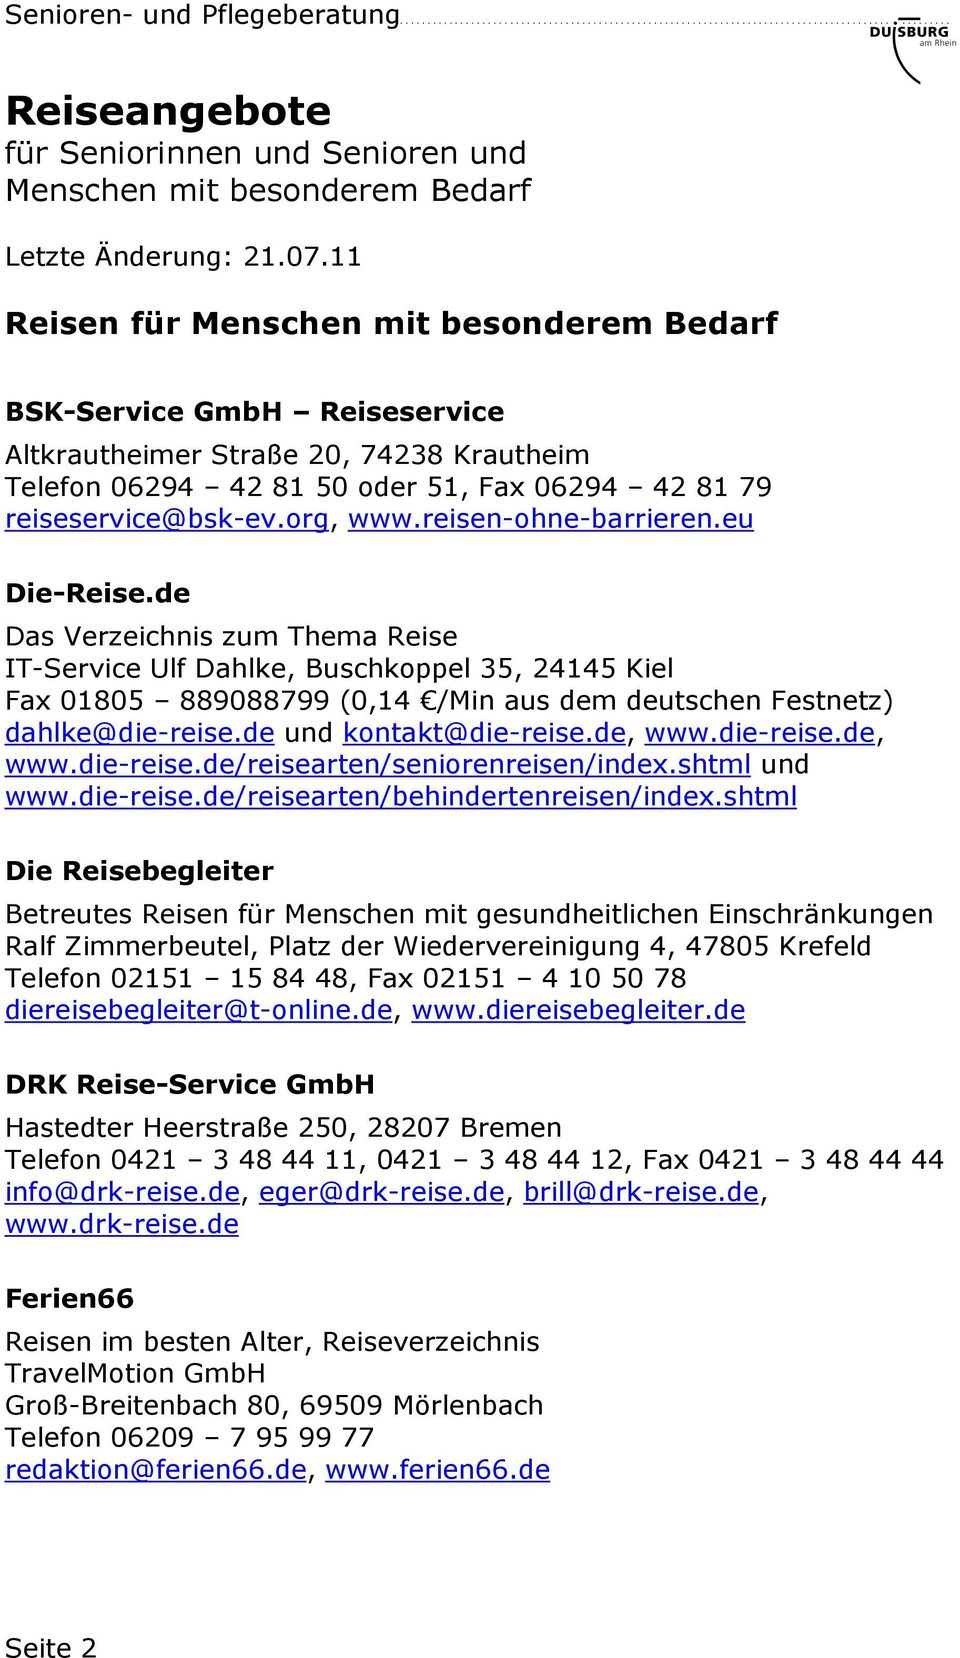 die-reise.de, www.die-reise.de/reisearten/seniorenreisen/index.shtml und www.die-reise.de/reisearten/behindertenreisen/index.